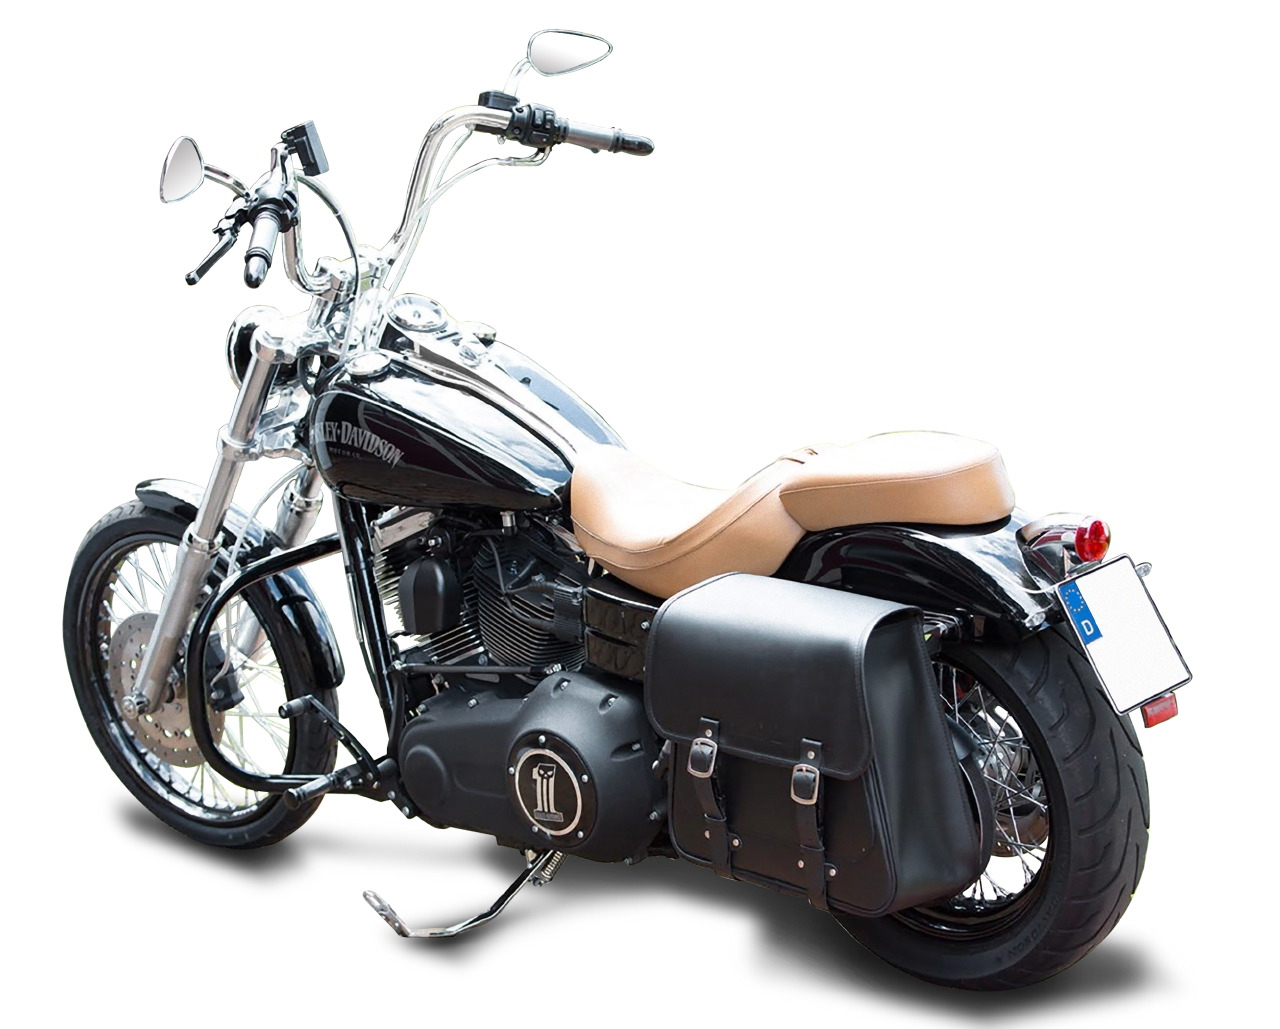 Blinkerversatzkit für Harley Davidson Dyna Fat Bob für Satteltasche bis 2008